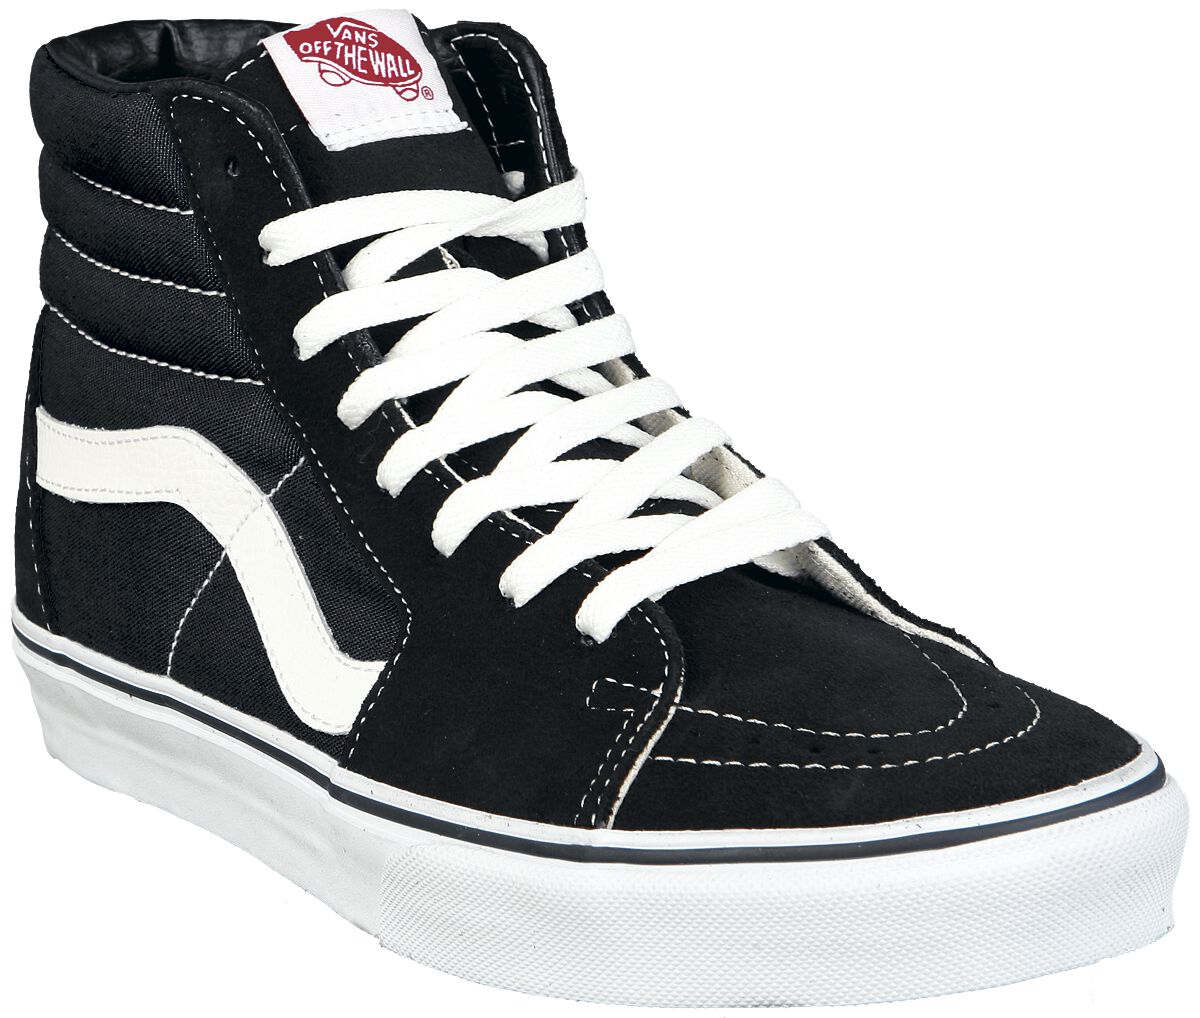 Vans Sneaker high - SK8-Hi - EU37 bis EU47 - Größe EU43 - schwarz/weiß